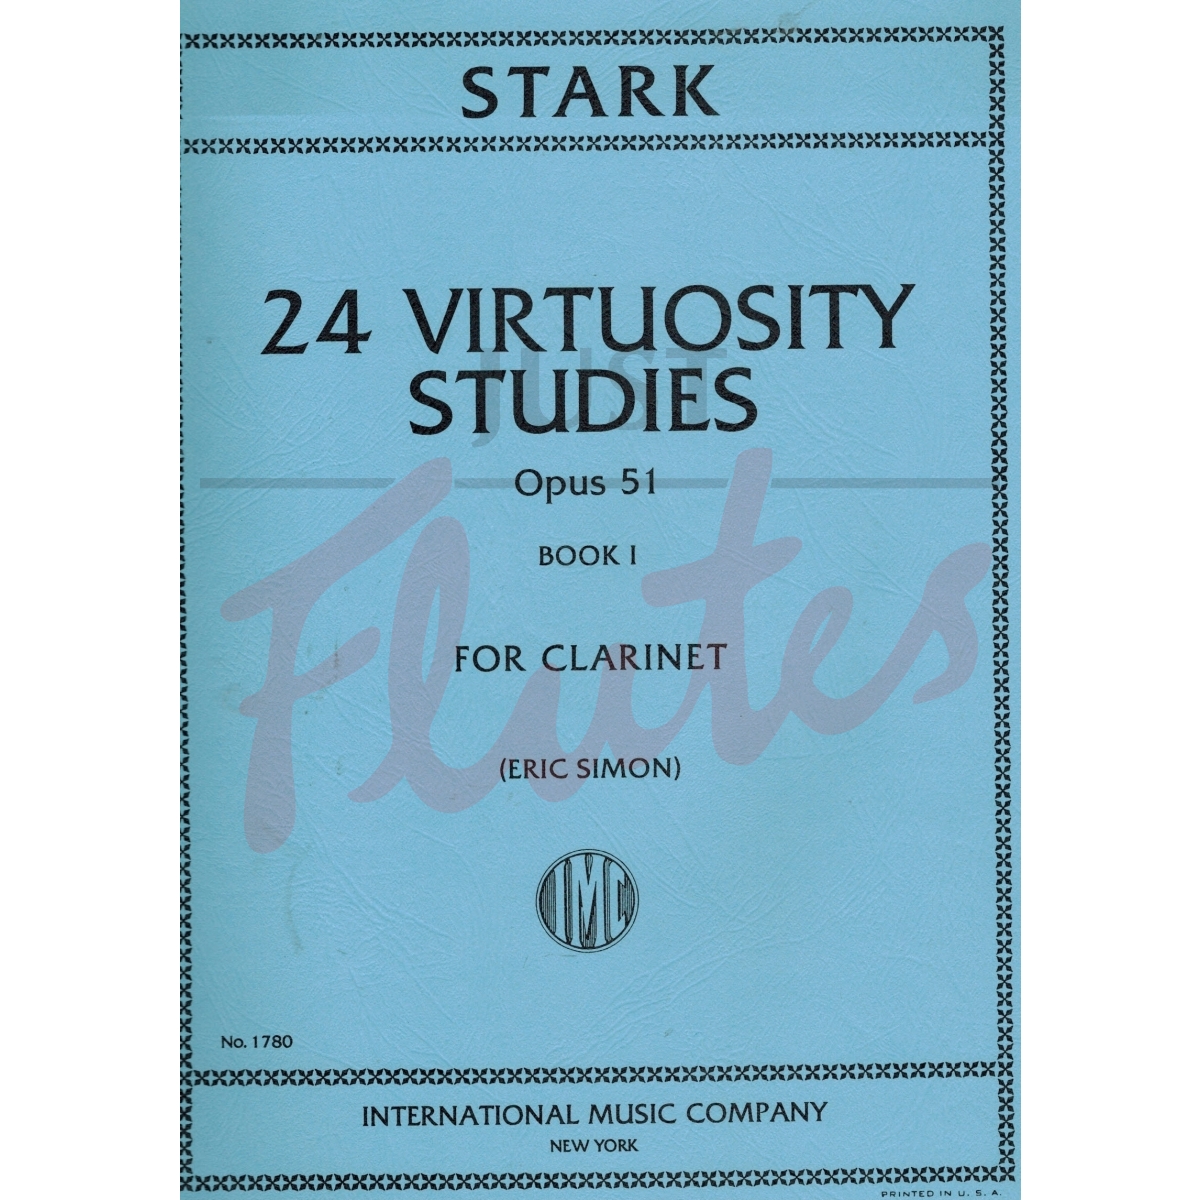 24 Virtuosity Studies